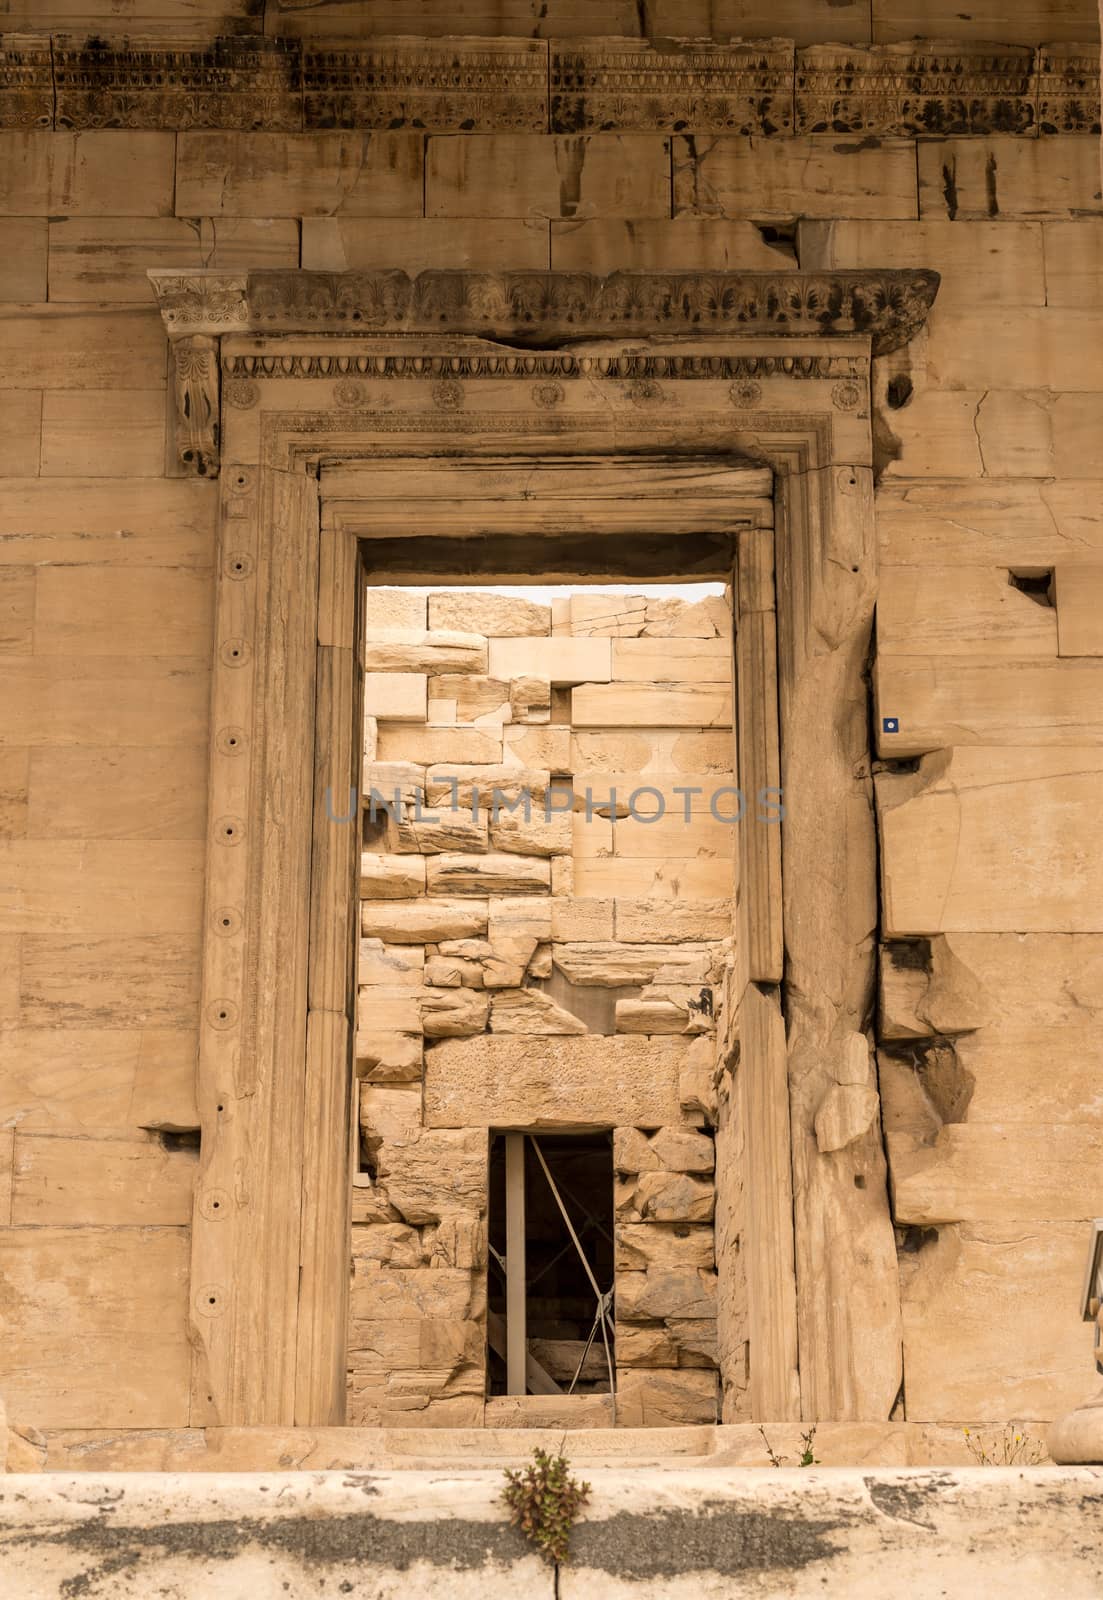 Doorway into Erechtheion or Erechtheum in Athens by steheap